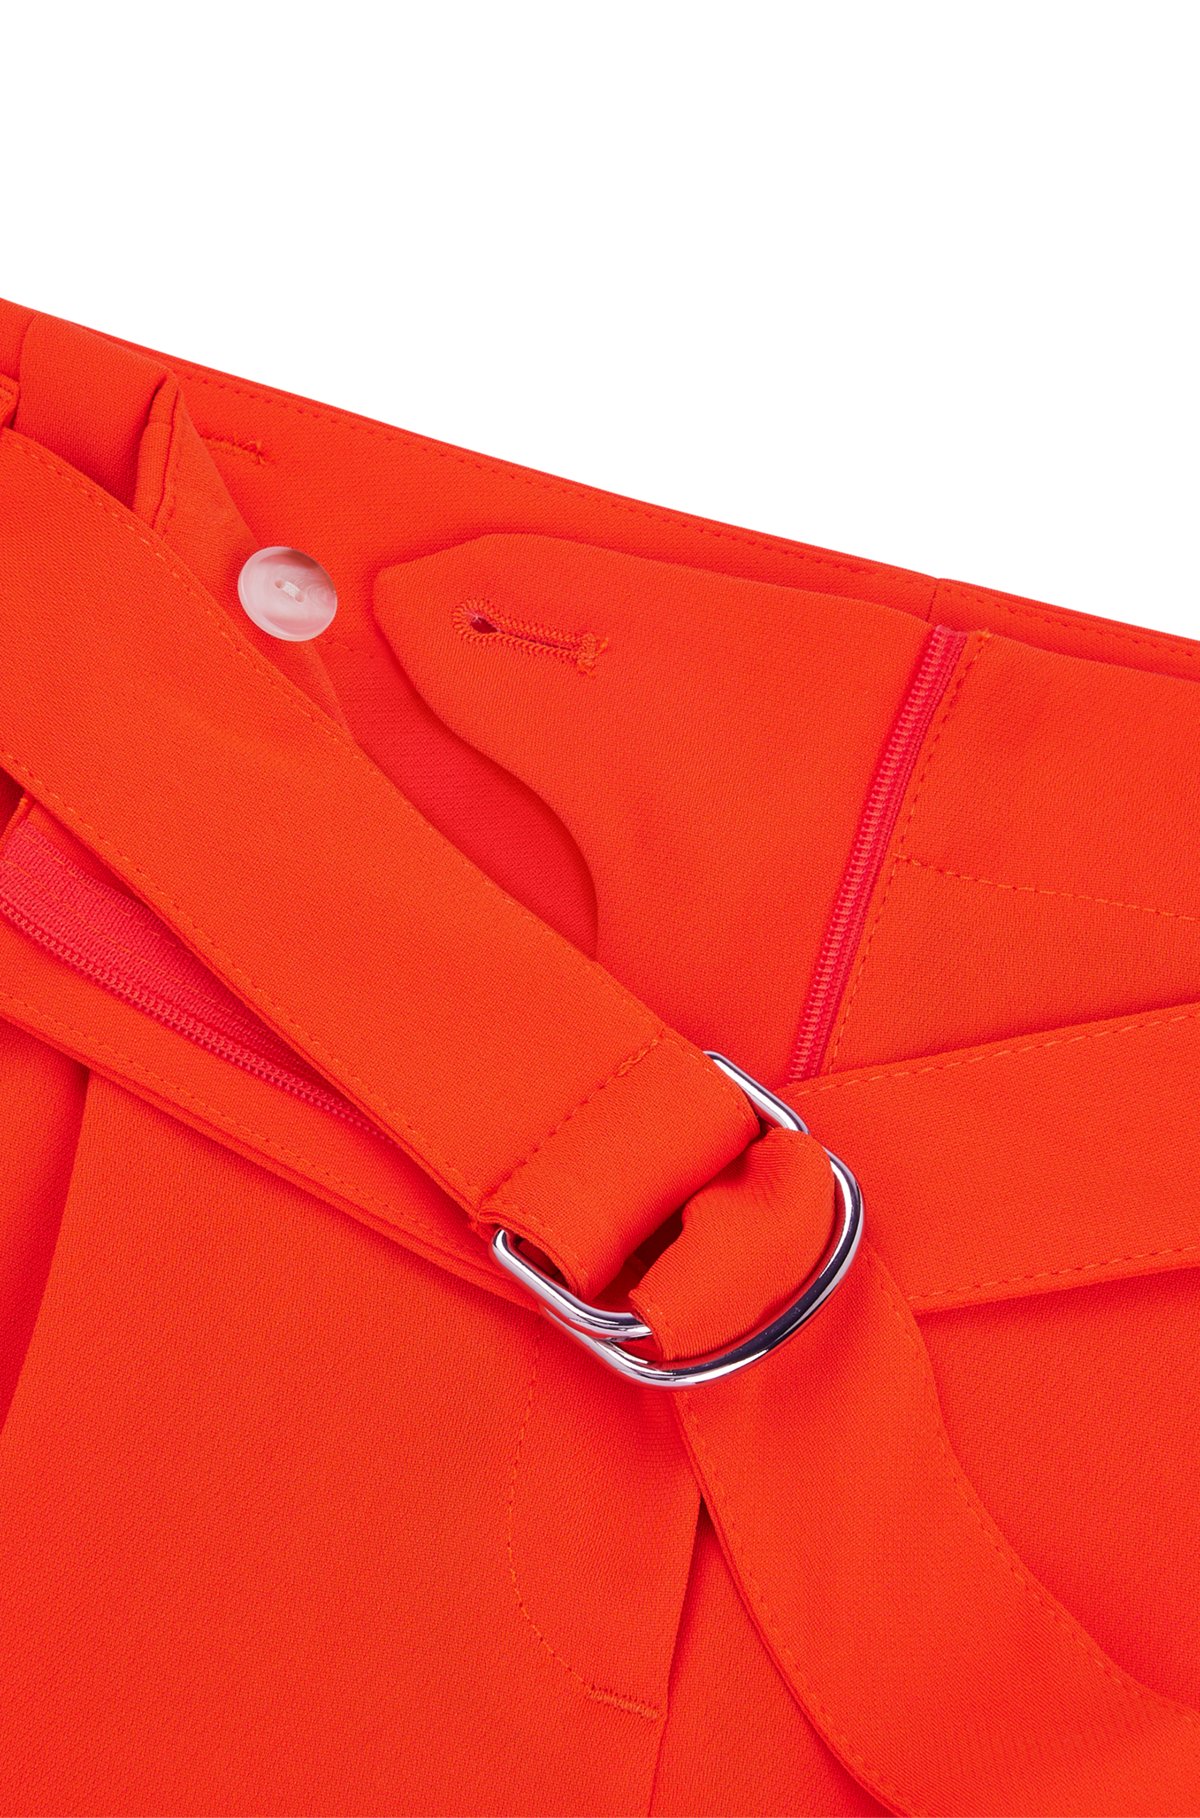 Regular-Fit Hose aus japanischem Krepp in Cropped-Länge, Orange